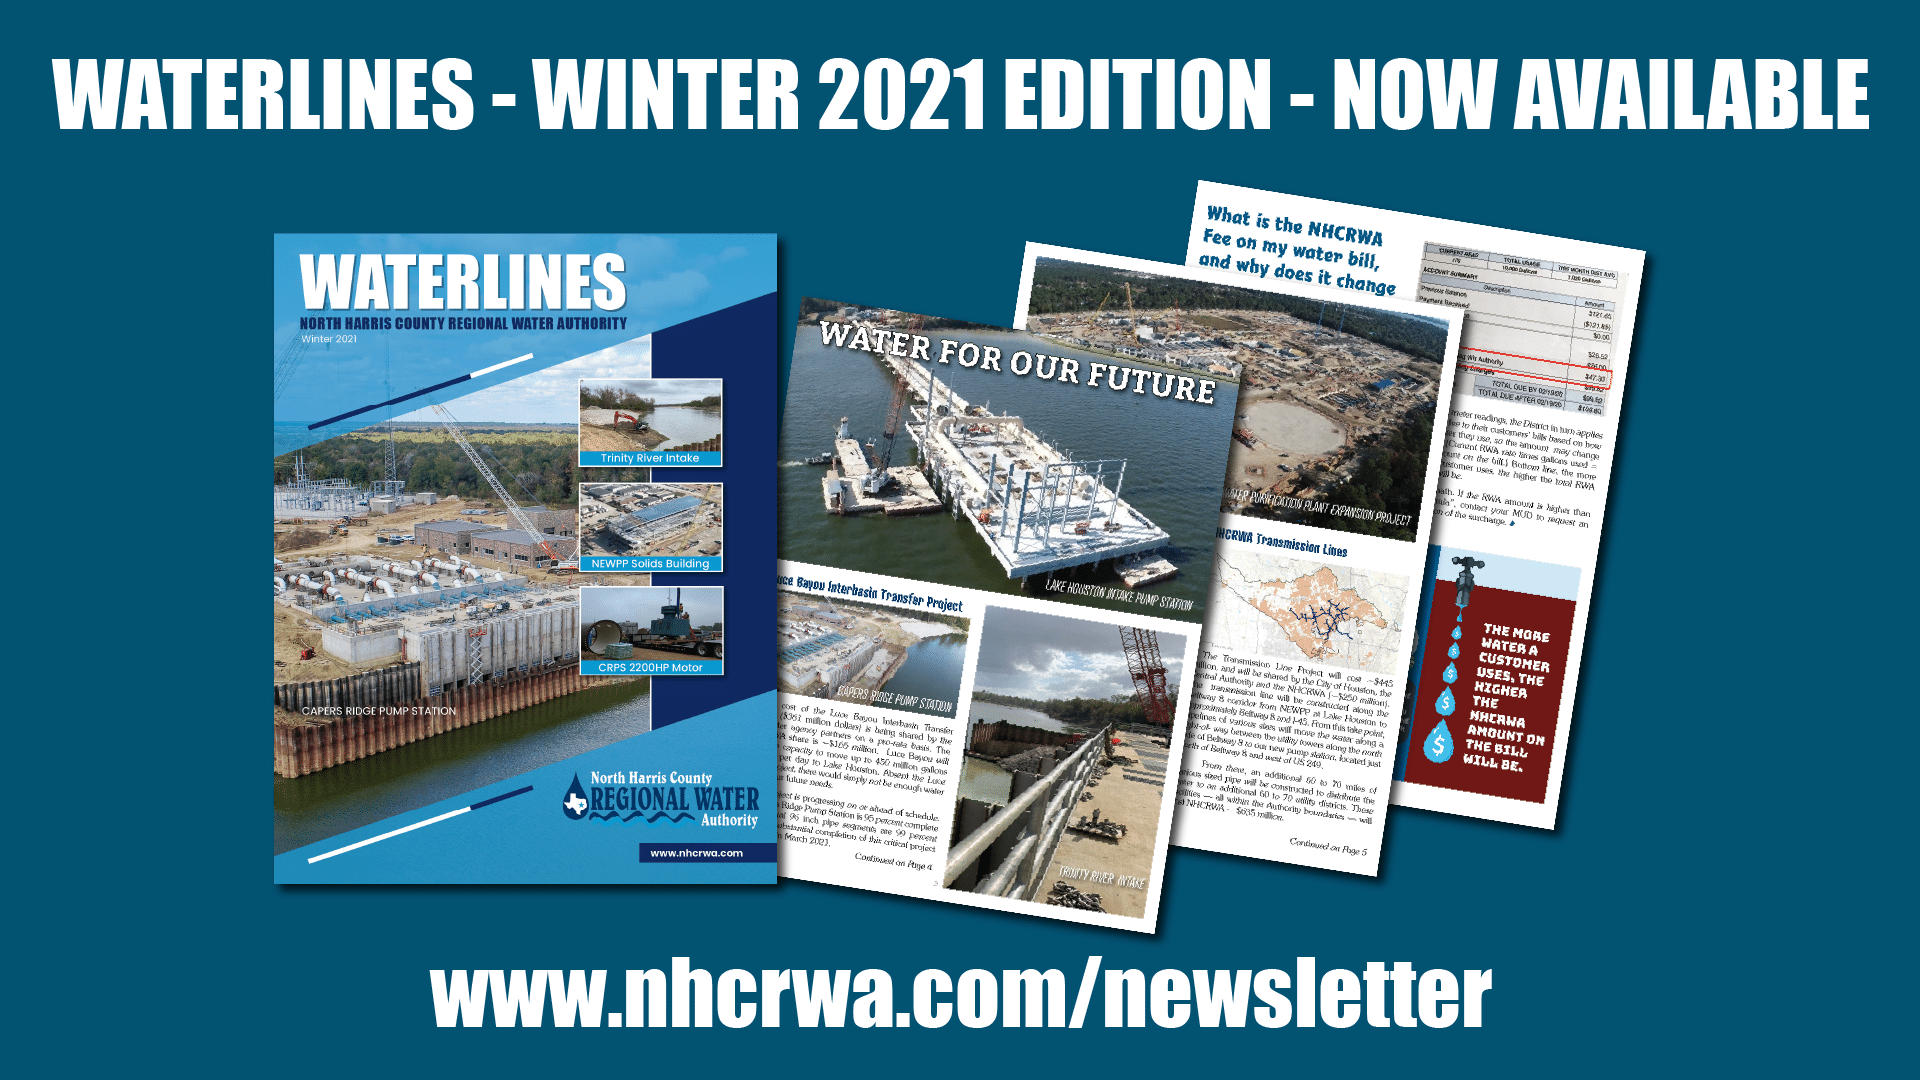 NHCRWA Waterlines Newsletter design and announcement